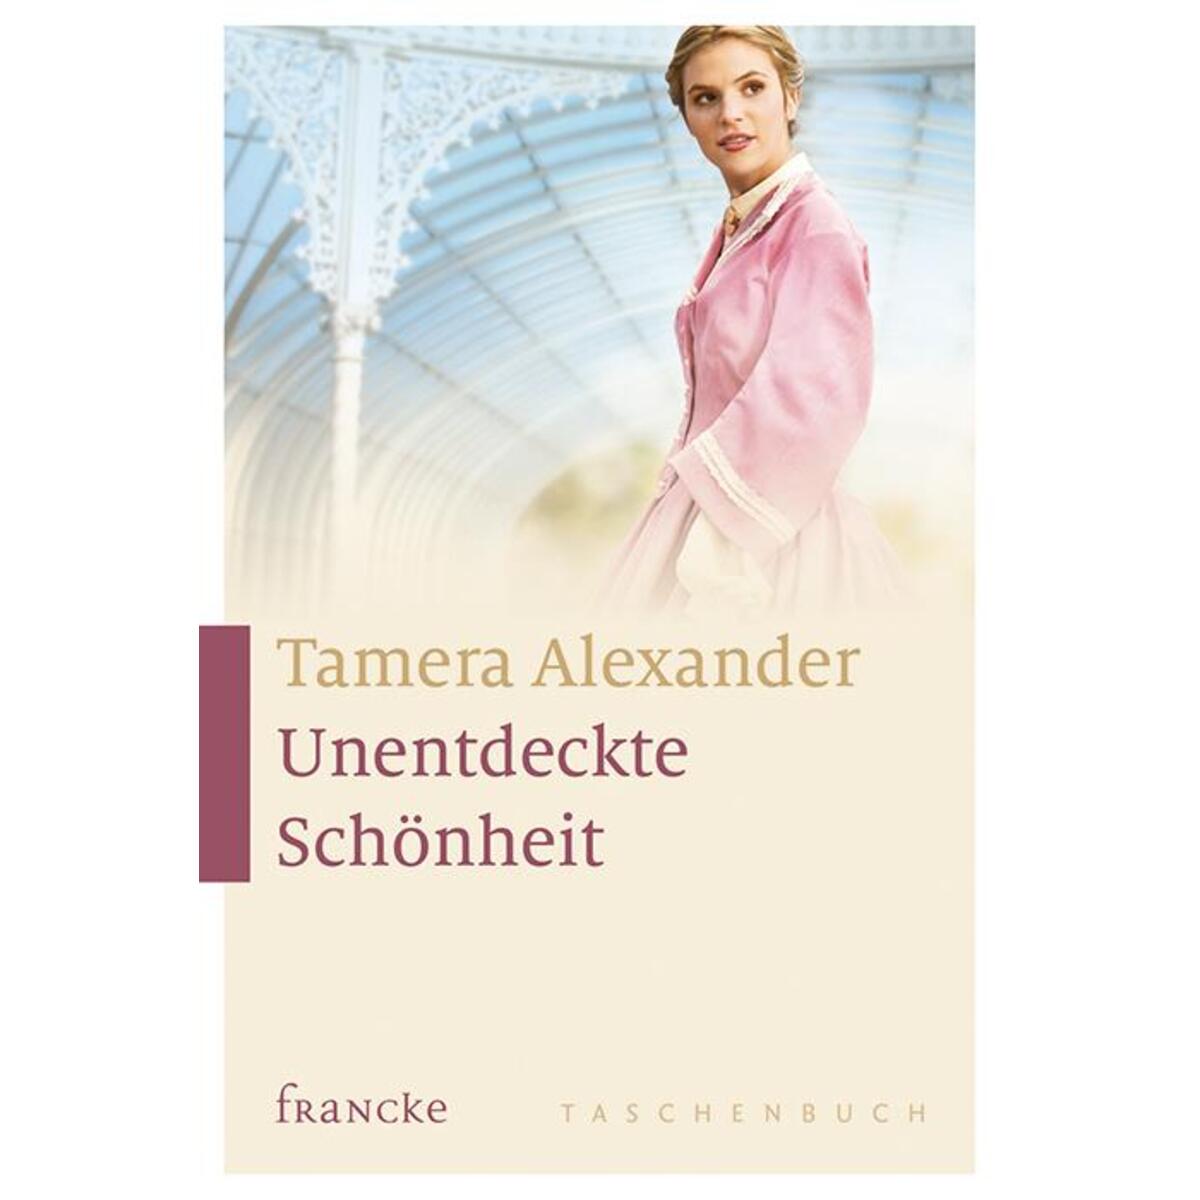 Unentdeckte Schönheit von Francke-Buch GmbH